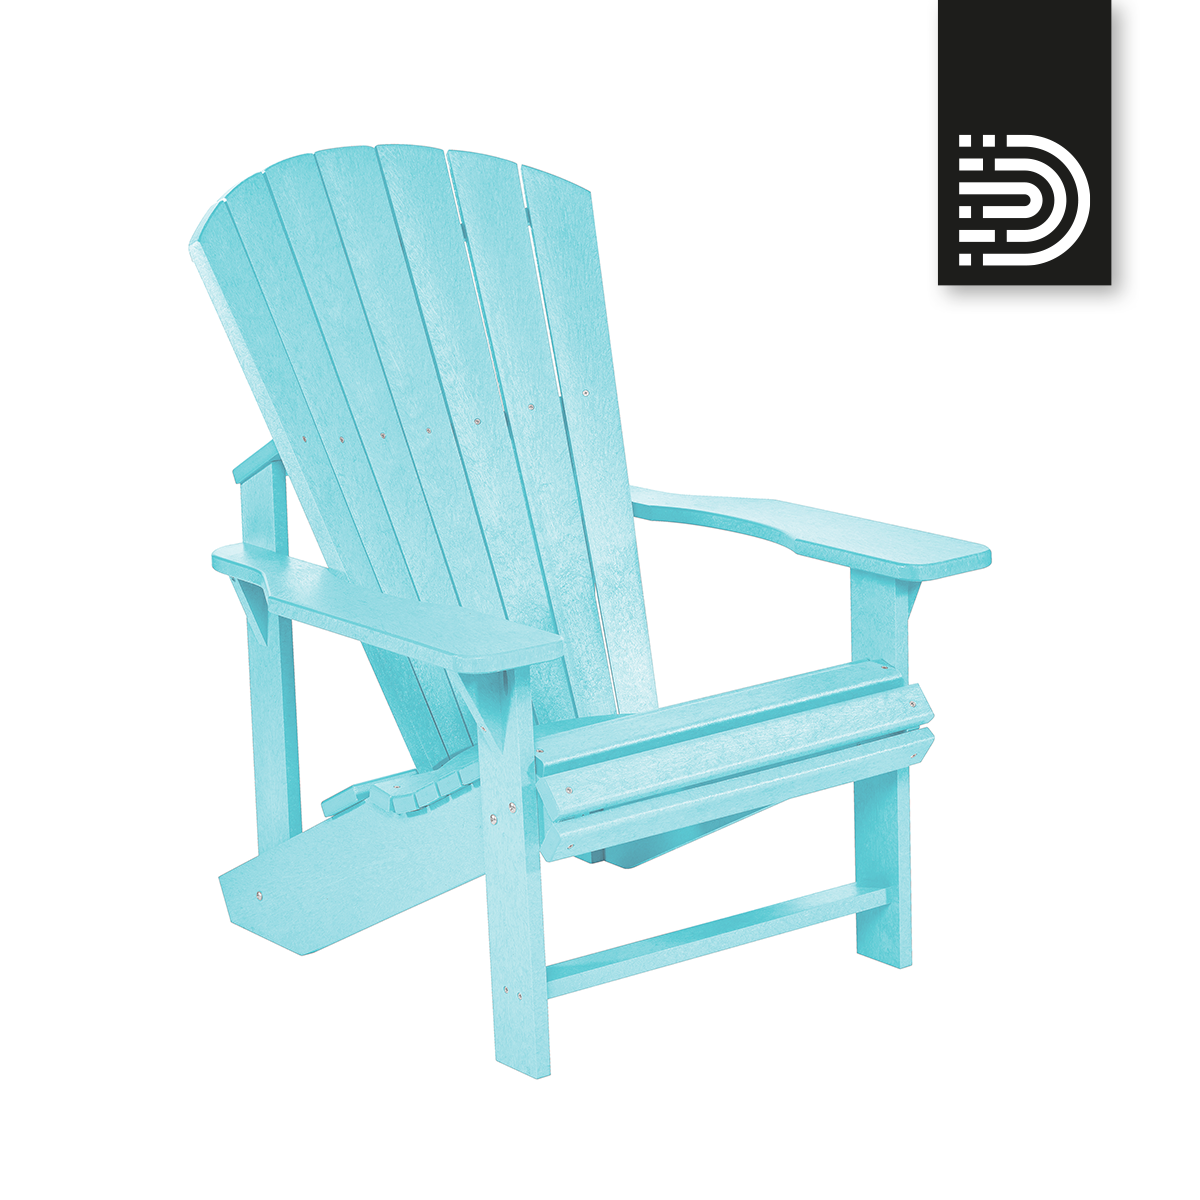  C01 Classic Adirondack Chair - aqua 11